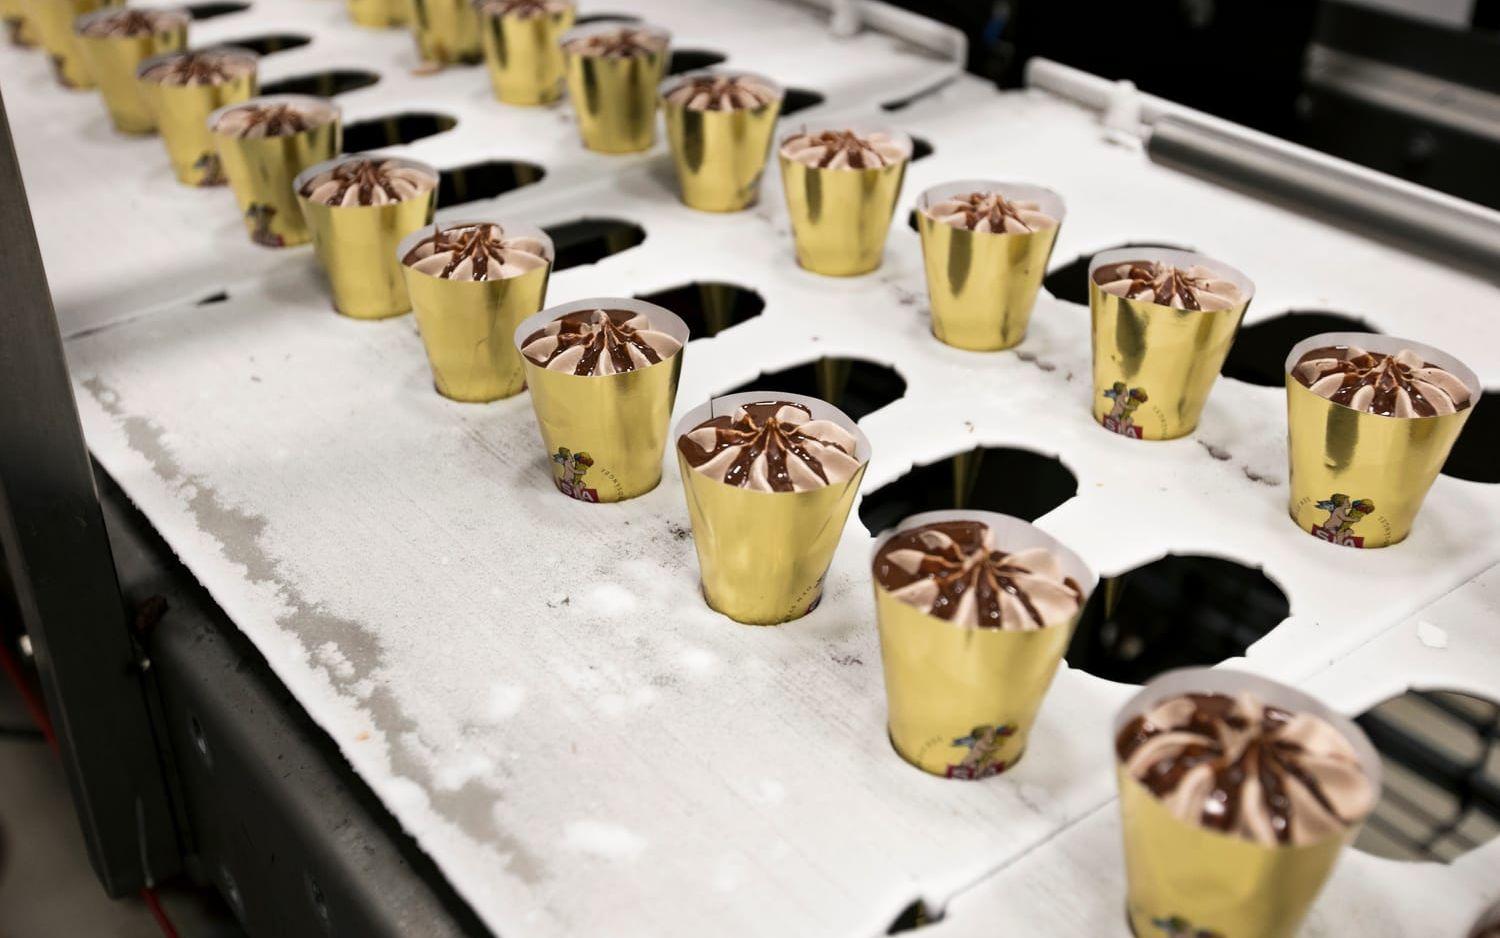 Närproducerat. 86 procent av råvarorna som används i glassen kommer från Sverige. Grädden köper Sia Glass in från tre gårdar i Östergötland samt från Berte Gård på hemmaplan. Bild: Patrik Ljungman